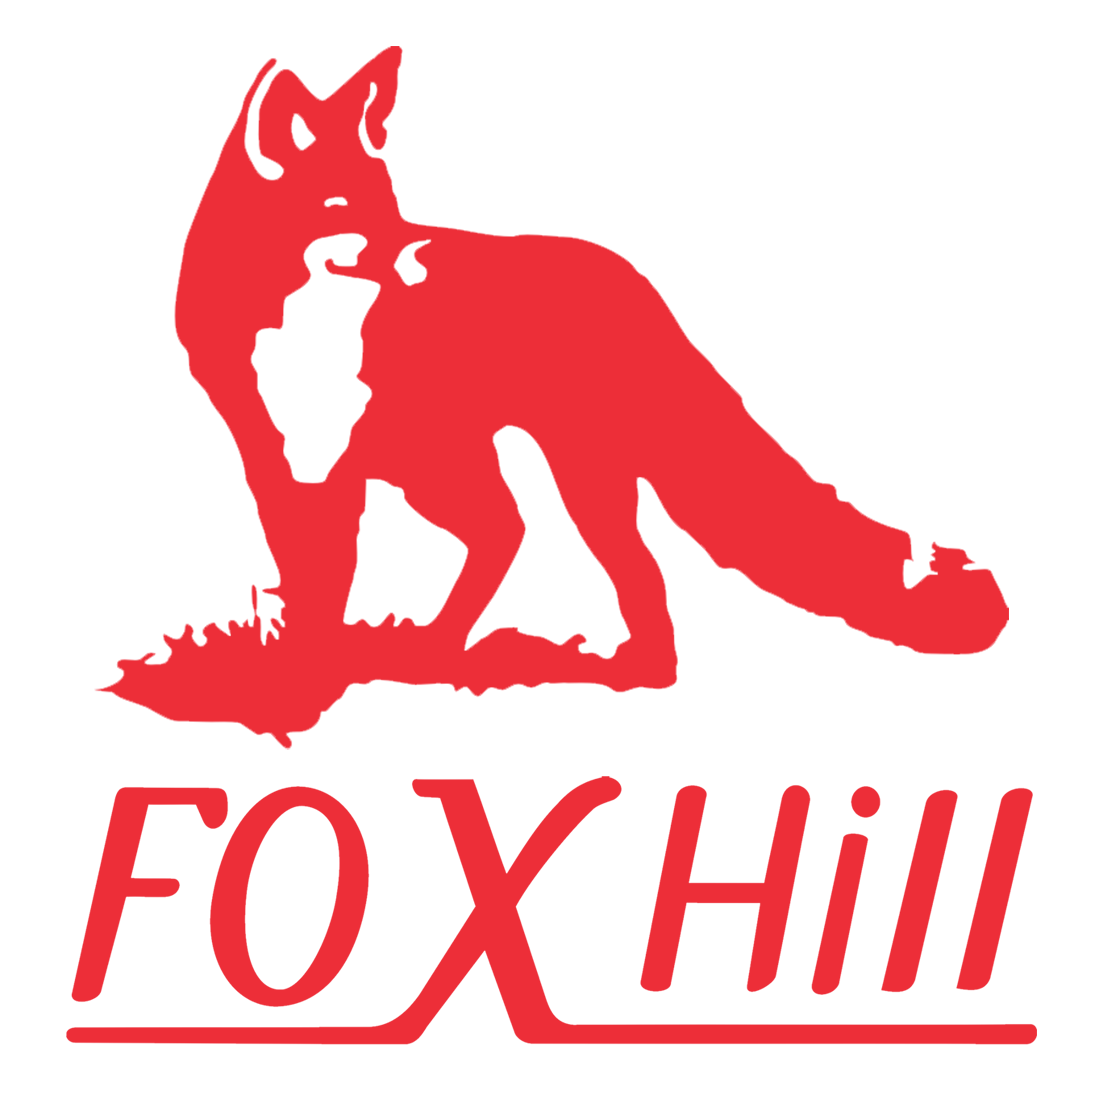 Foxhill Clothing Company